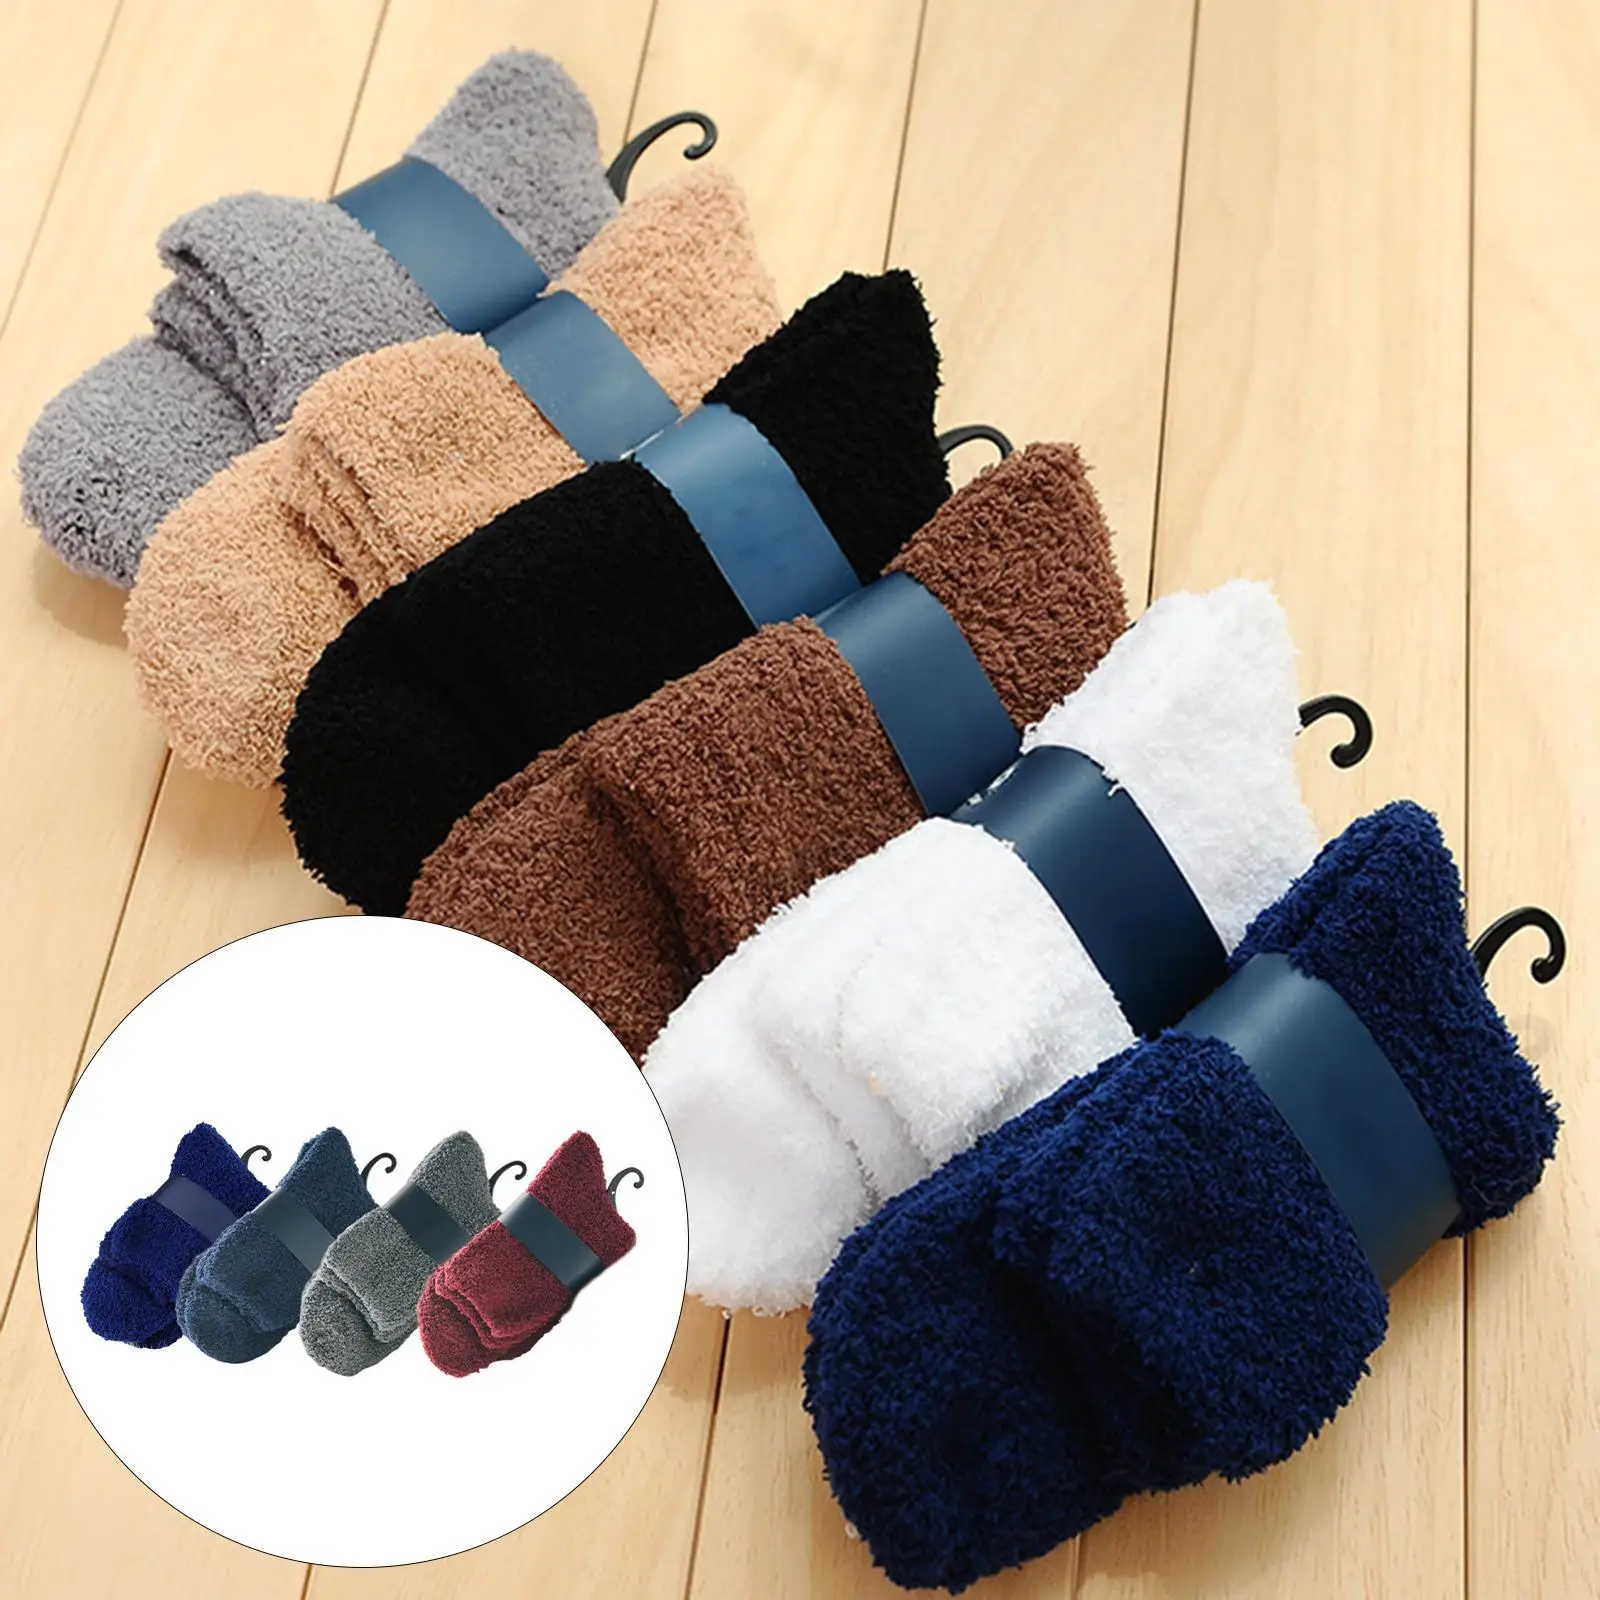 Fuzzy Socks for Women & Men Slipper Cozy Warm Winter Sleep   Christmas Gift Socks